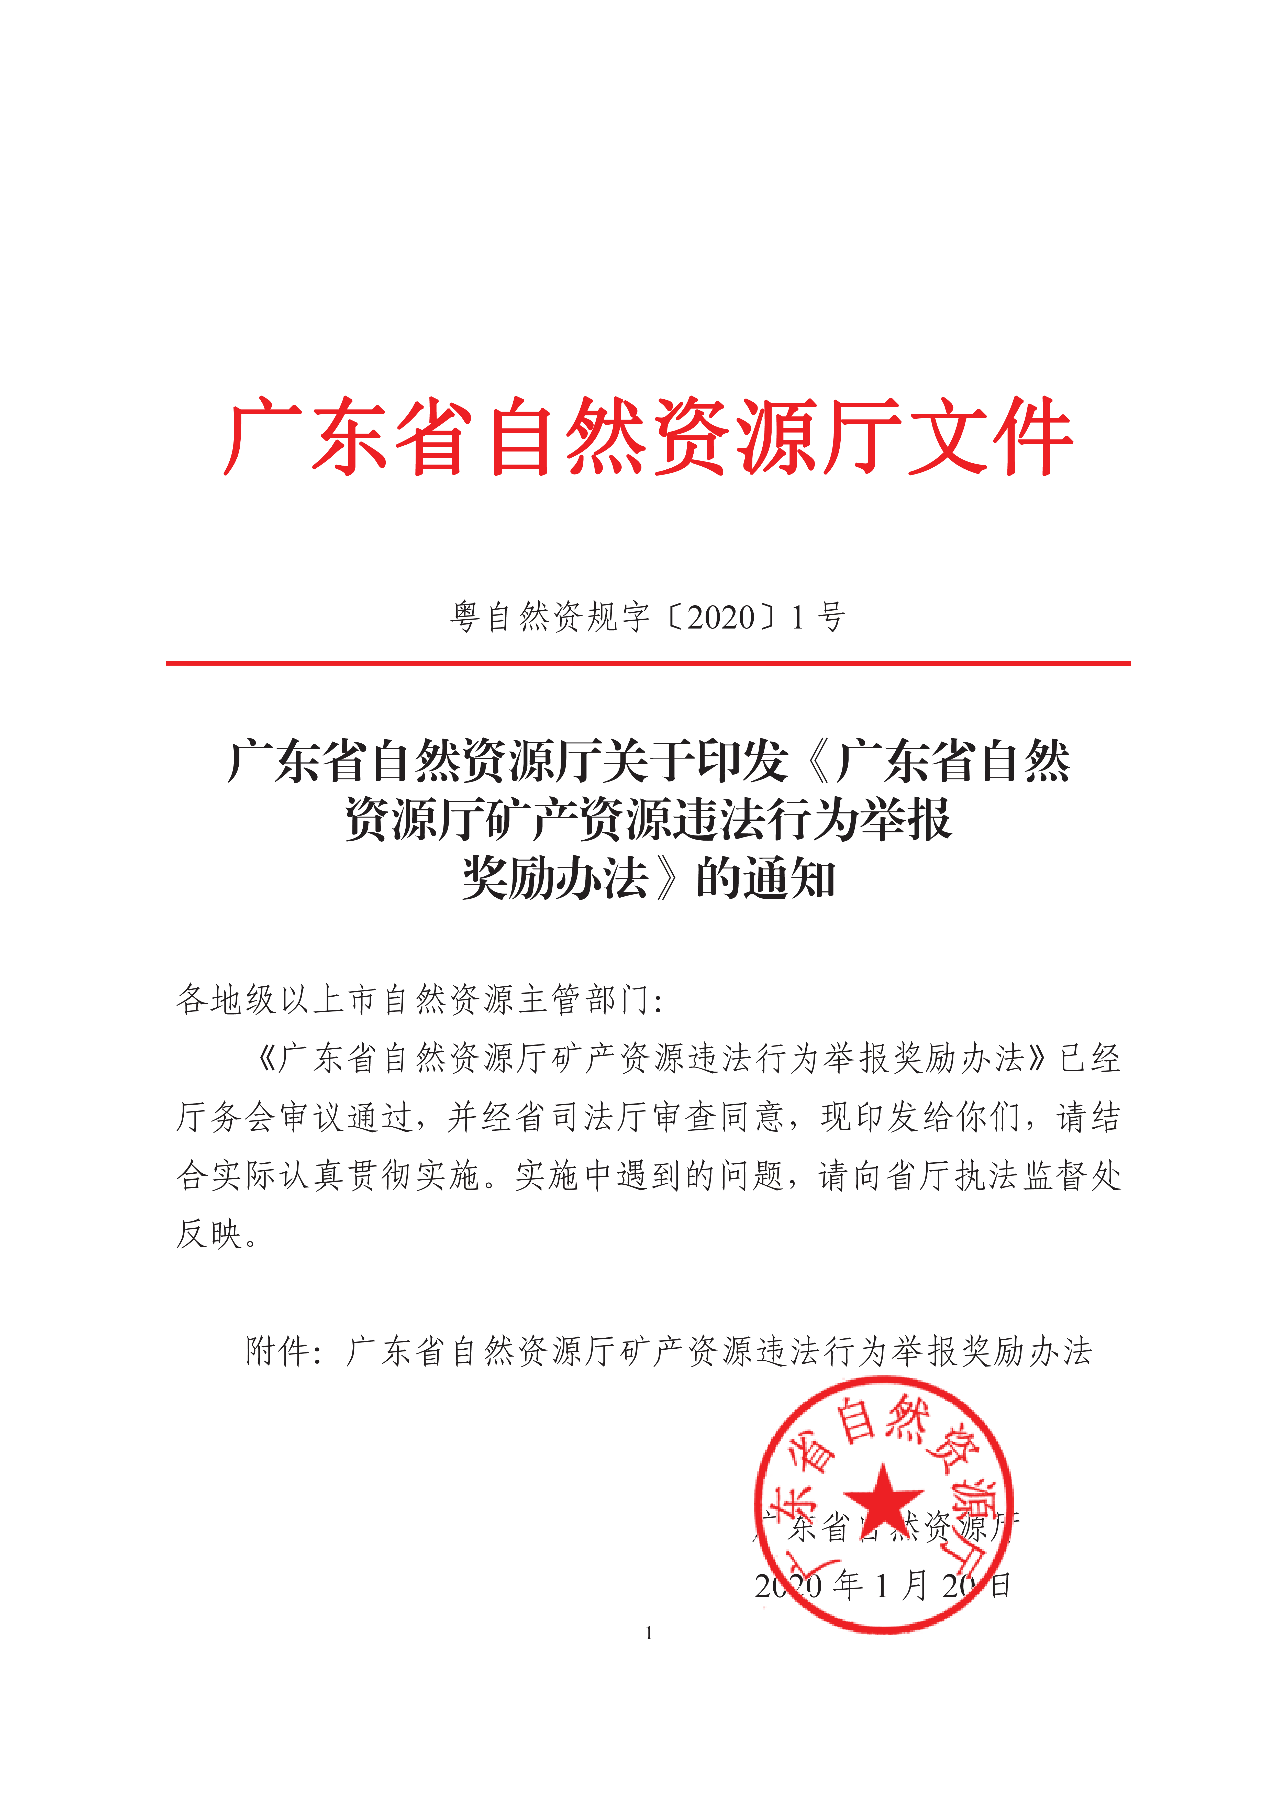 广东省自然资源厅矿产资源违法行为举报奖励办法